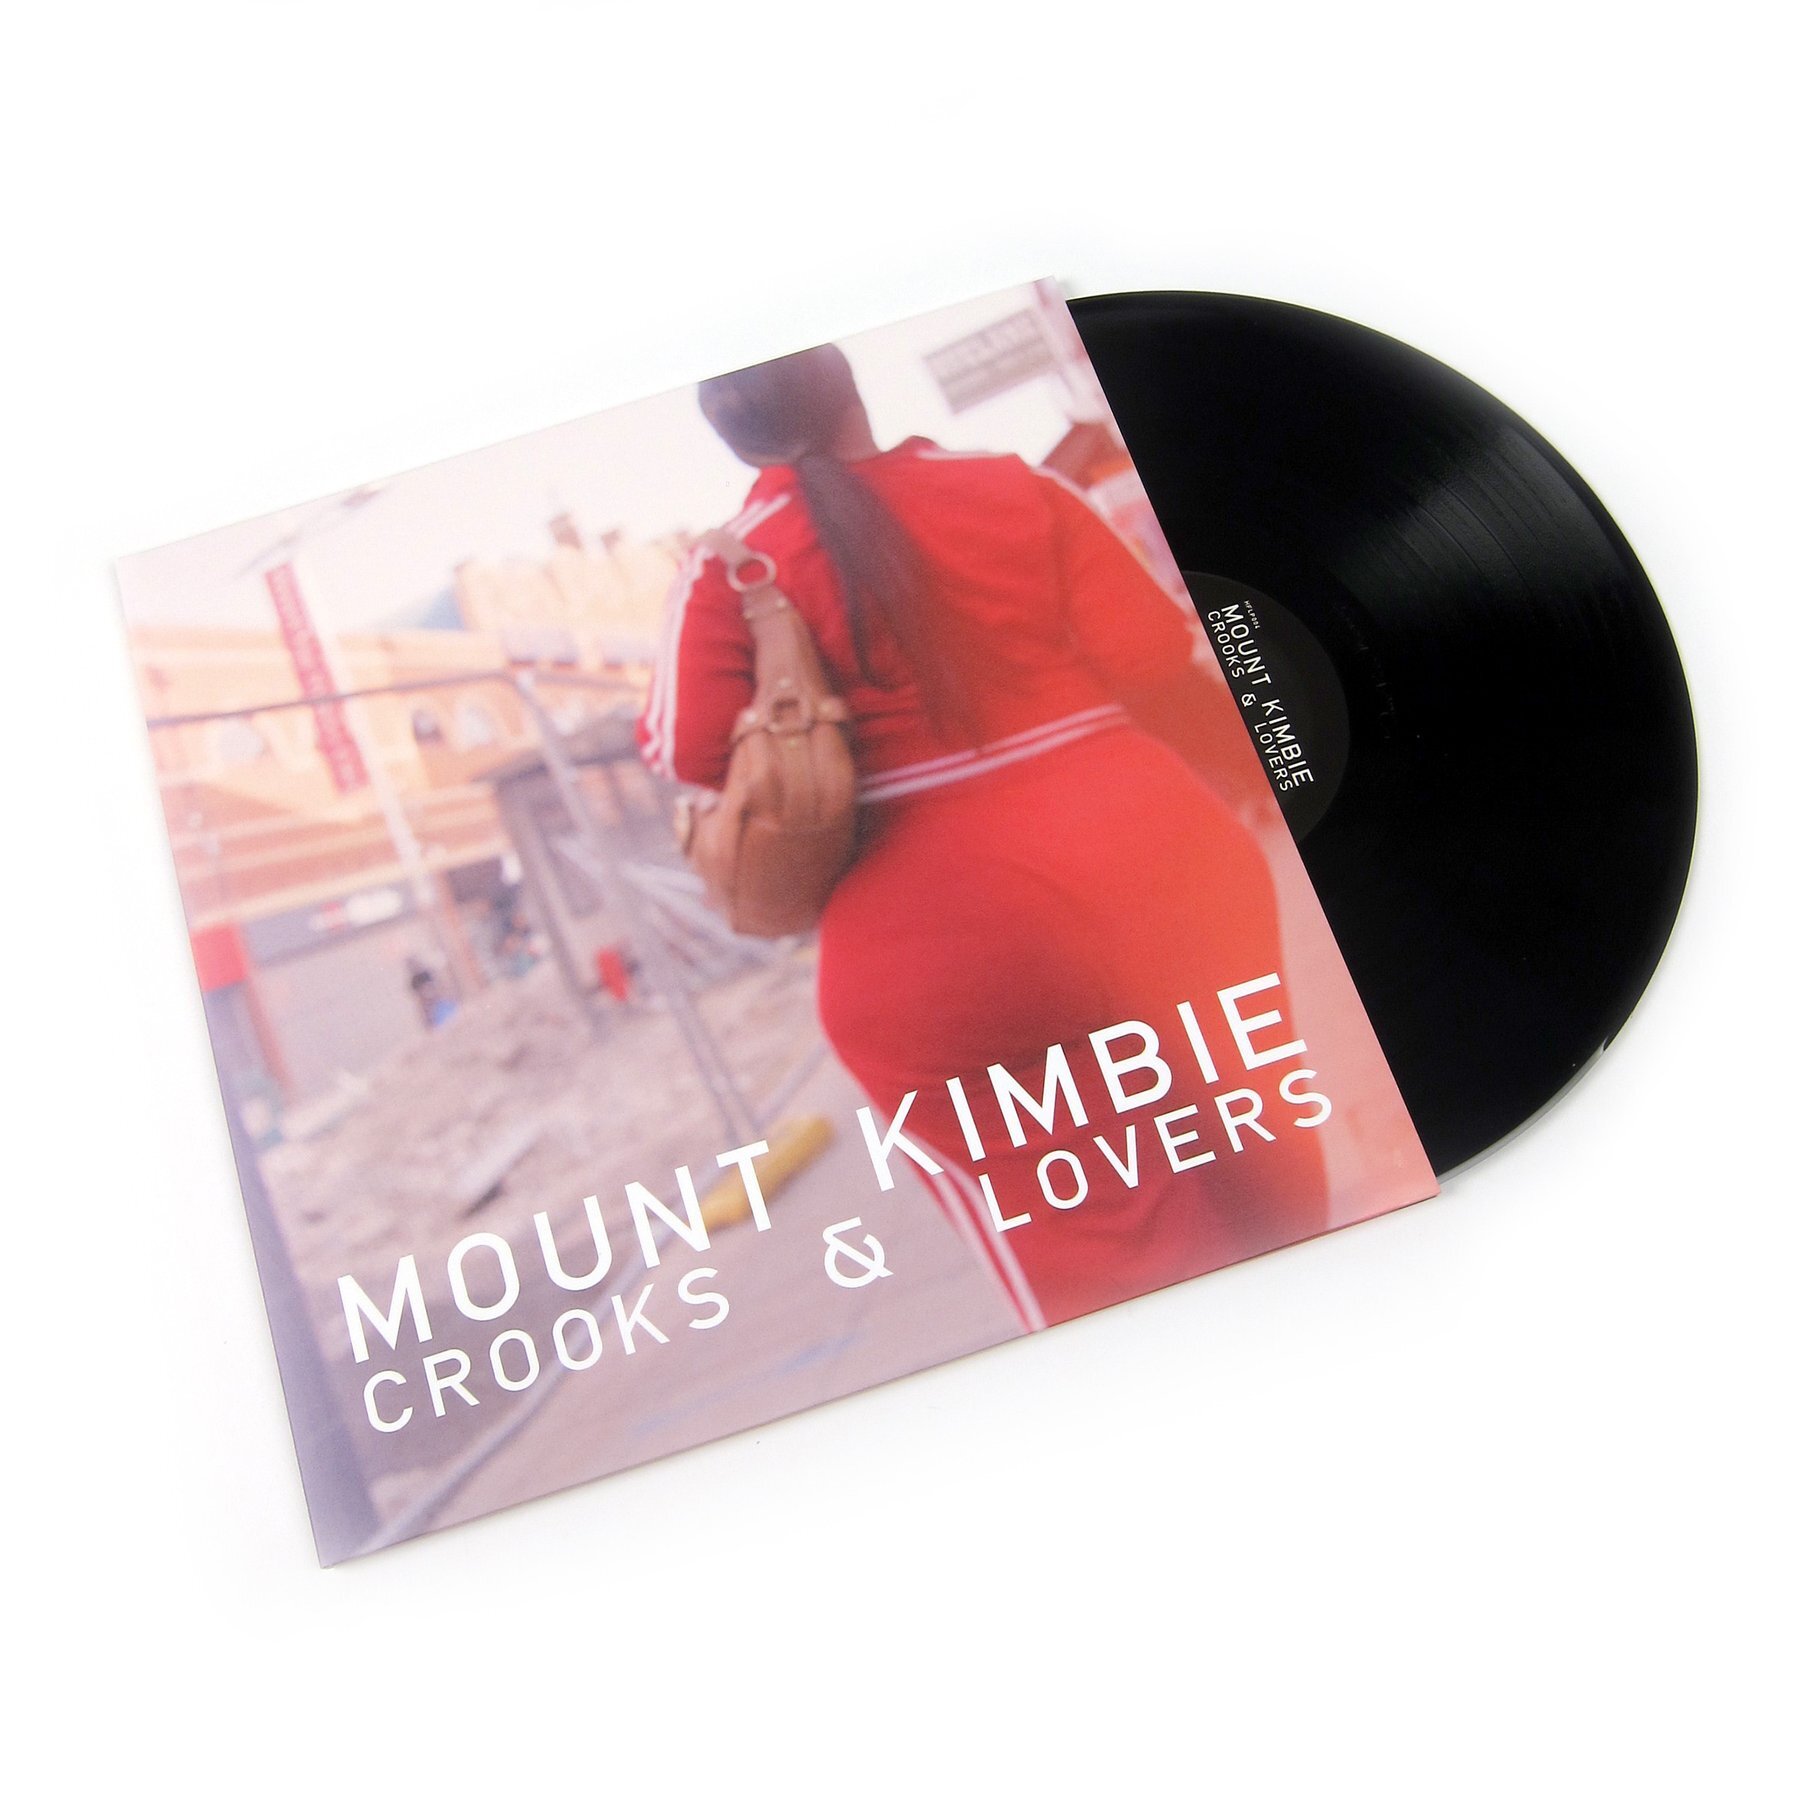 CROOKS & LOVERS — MOUNT KIMBIE